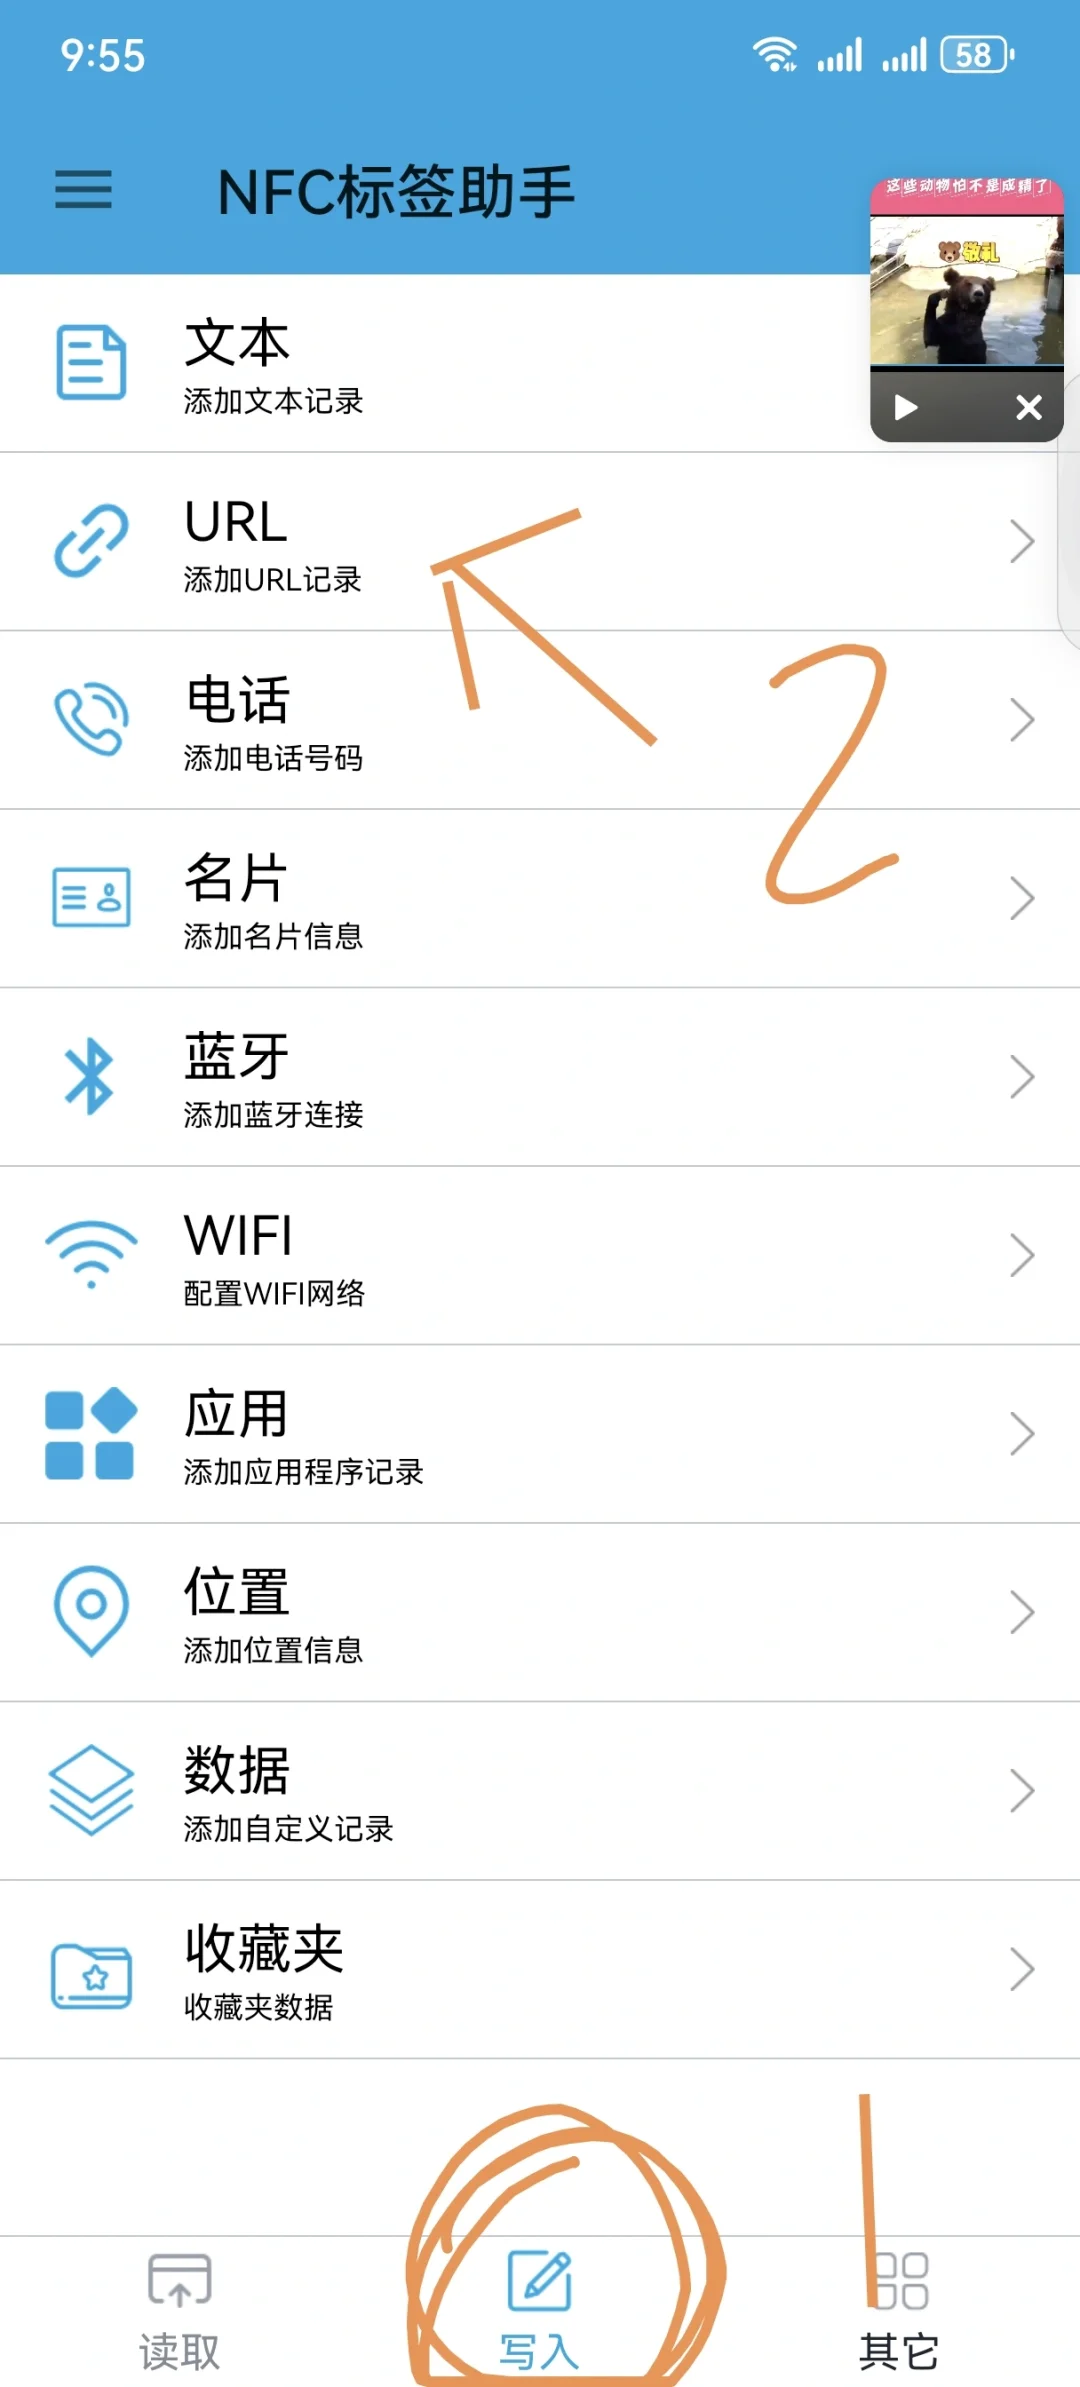 安卓手机录入NFC冰箱贴步骤